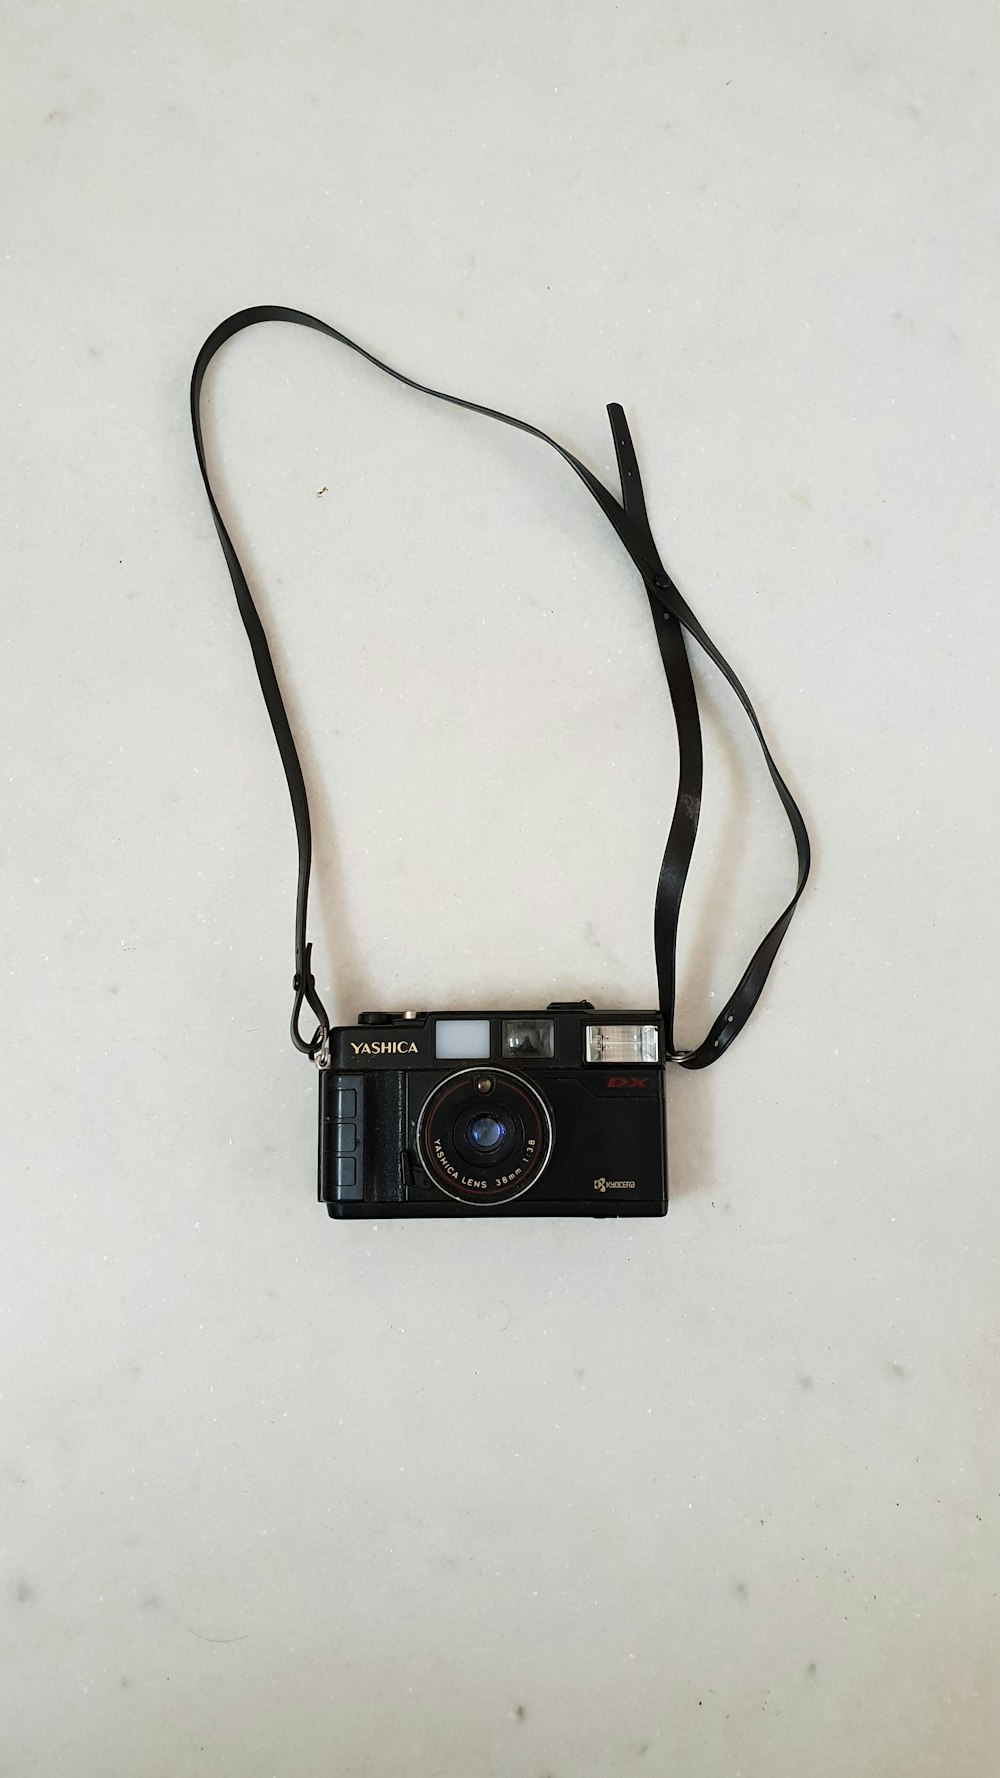 black Yashica bridge camera on white surface